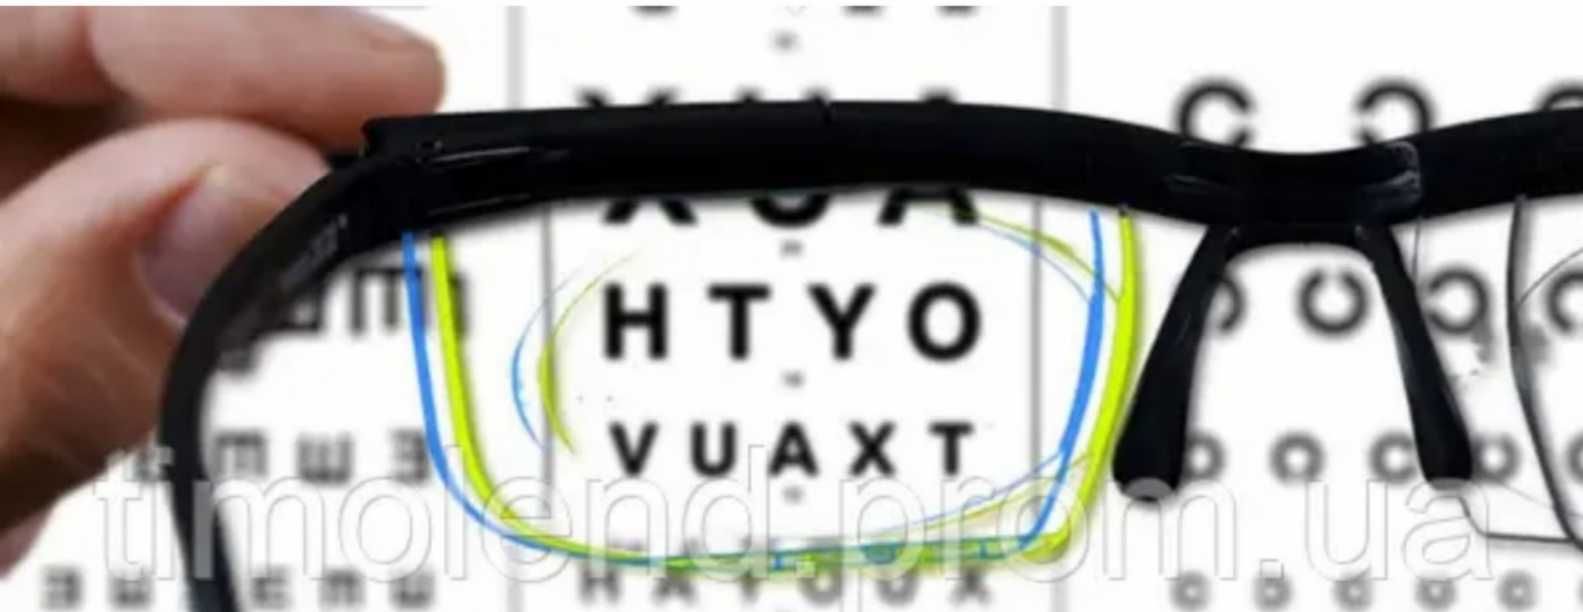 Очки универсальные для зрения Dial Vision с регулировкой диоптрий